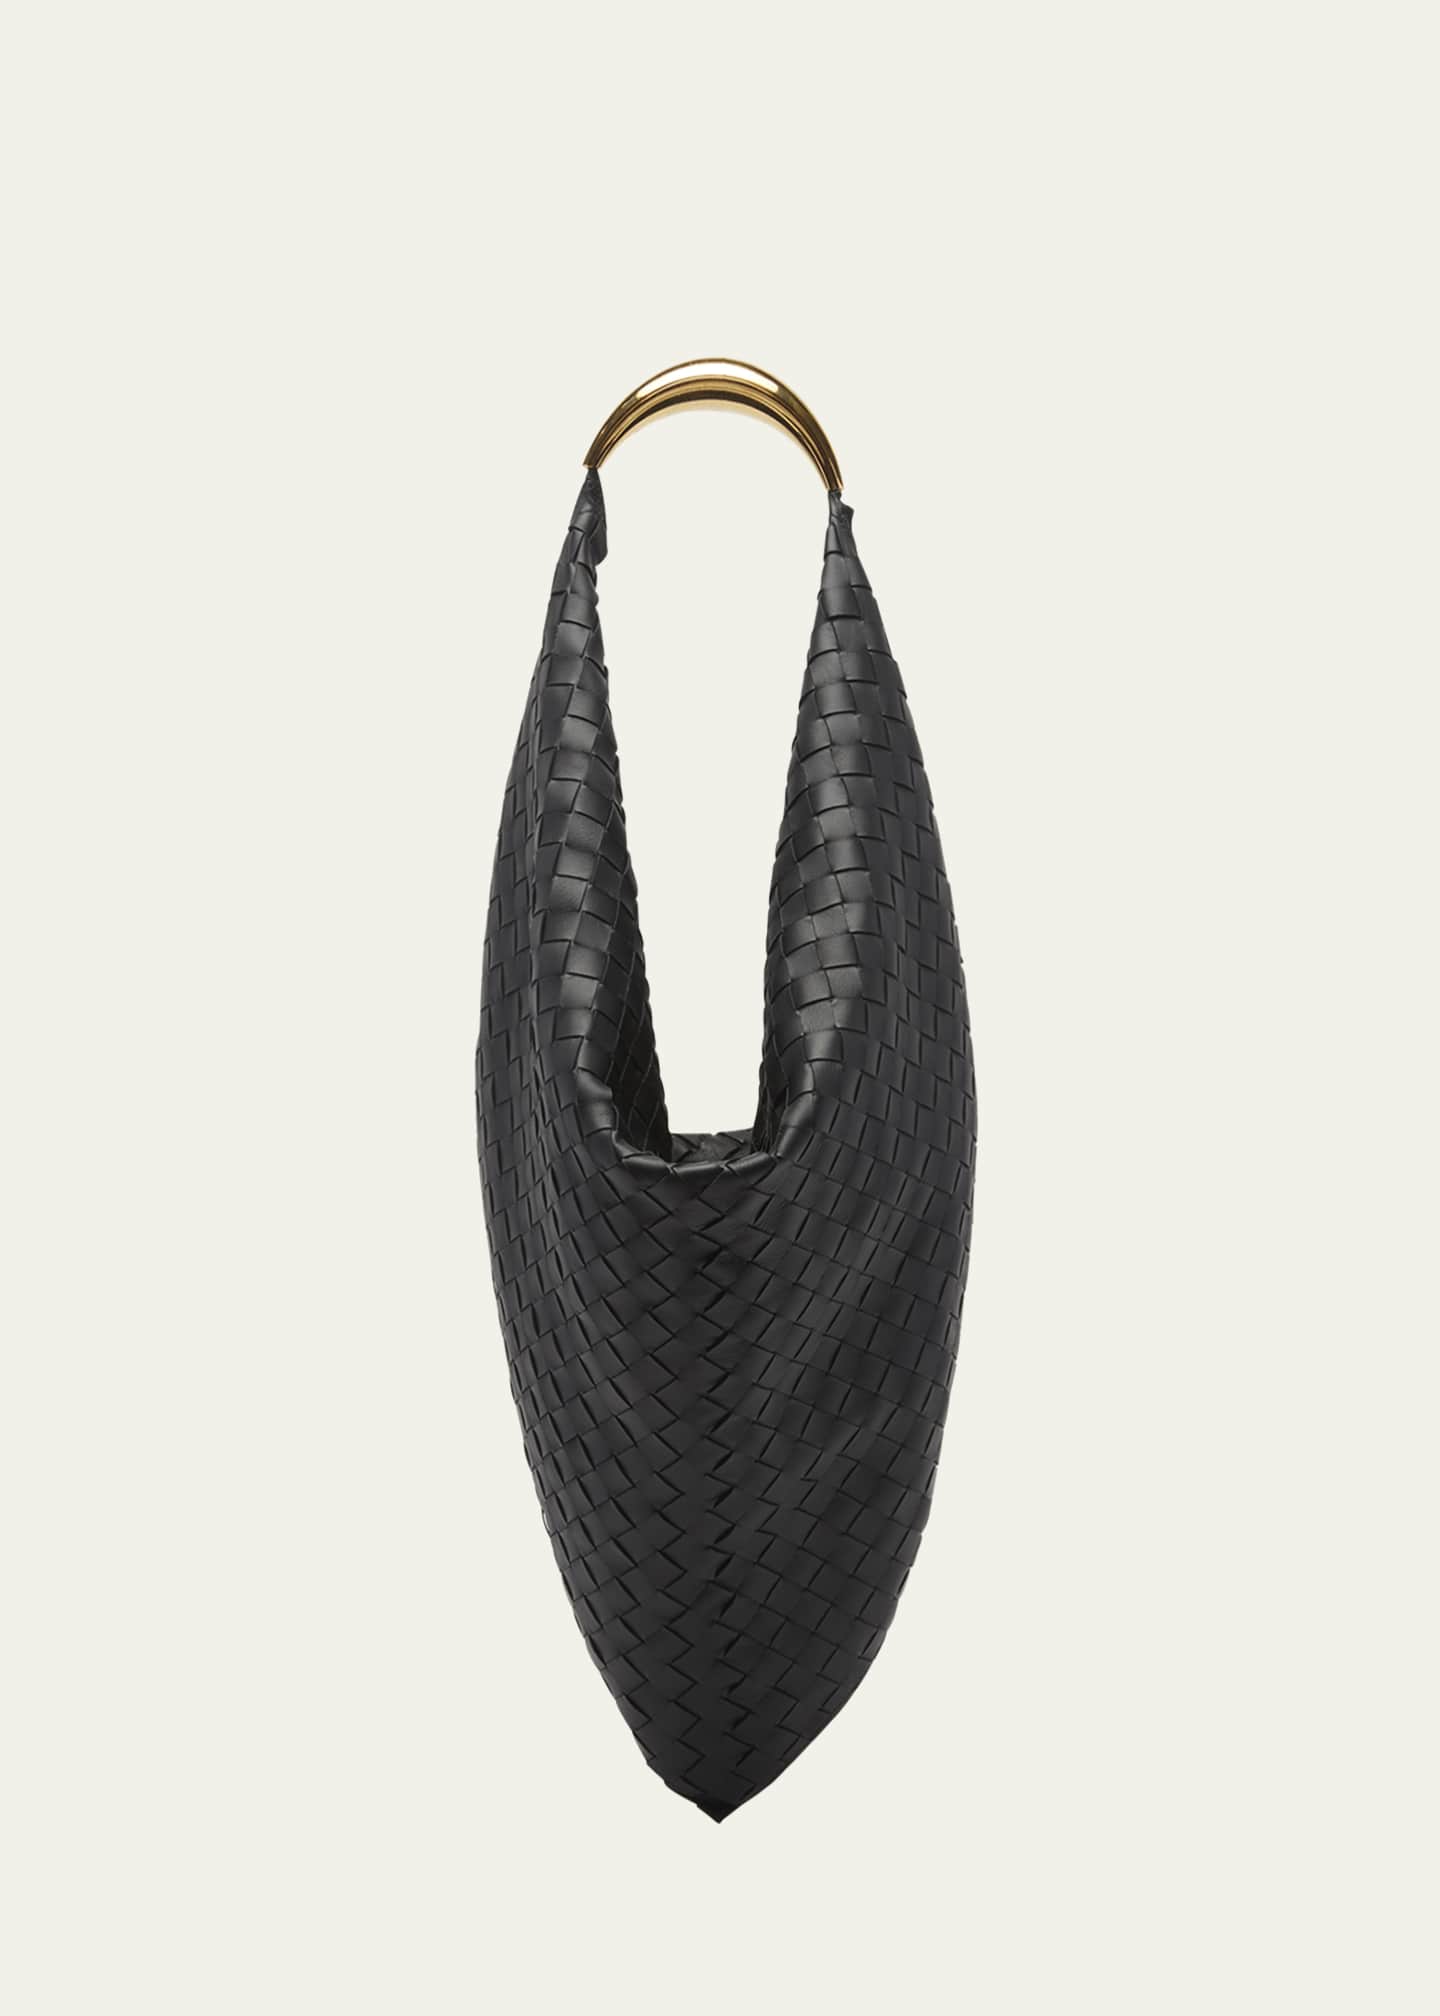 Foulard intrecciato leather shoulder bag